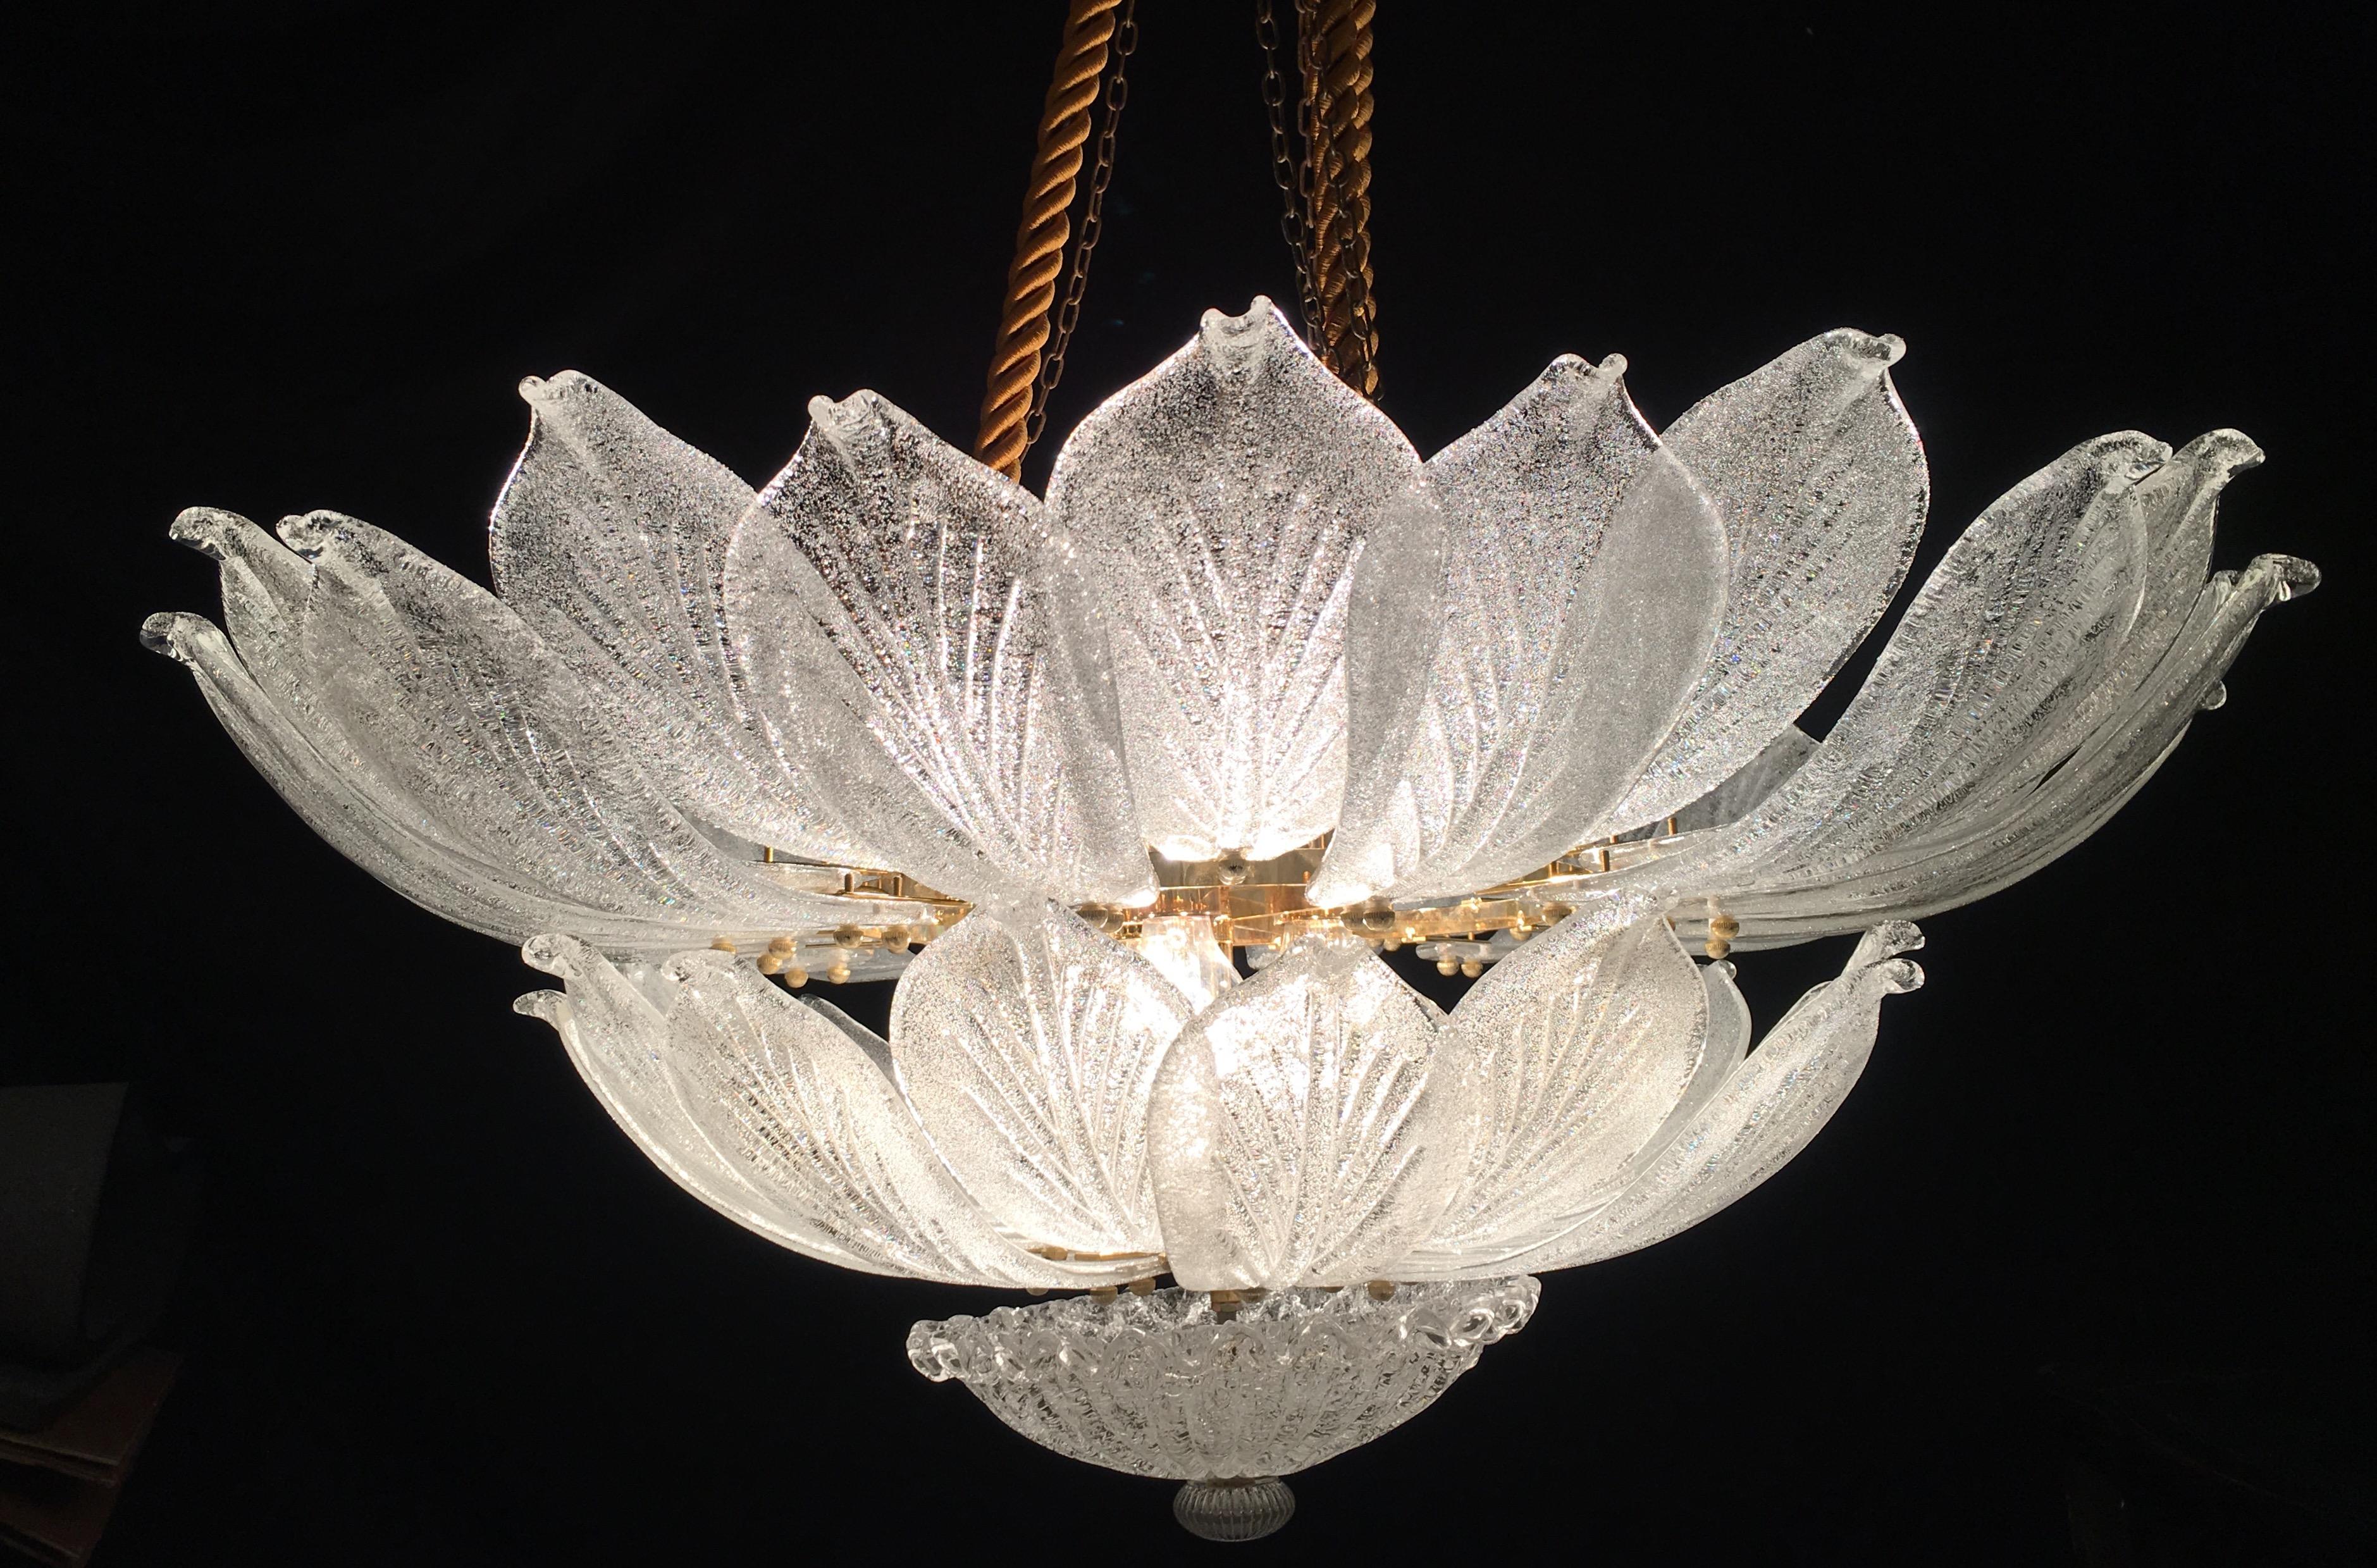 Diese auffällige Deckenleuchte ist aus reinem Murano-Glas gefertigt. Jeder Kronleuchter besteht aus einer unglaublichen Anzahl von Blättern mit Goldeinlage.
Der vergoldete Rahmen mit 12 E 27 Glühbirnen verbreitet ein magisches Licht.
Auch als Paar